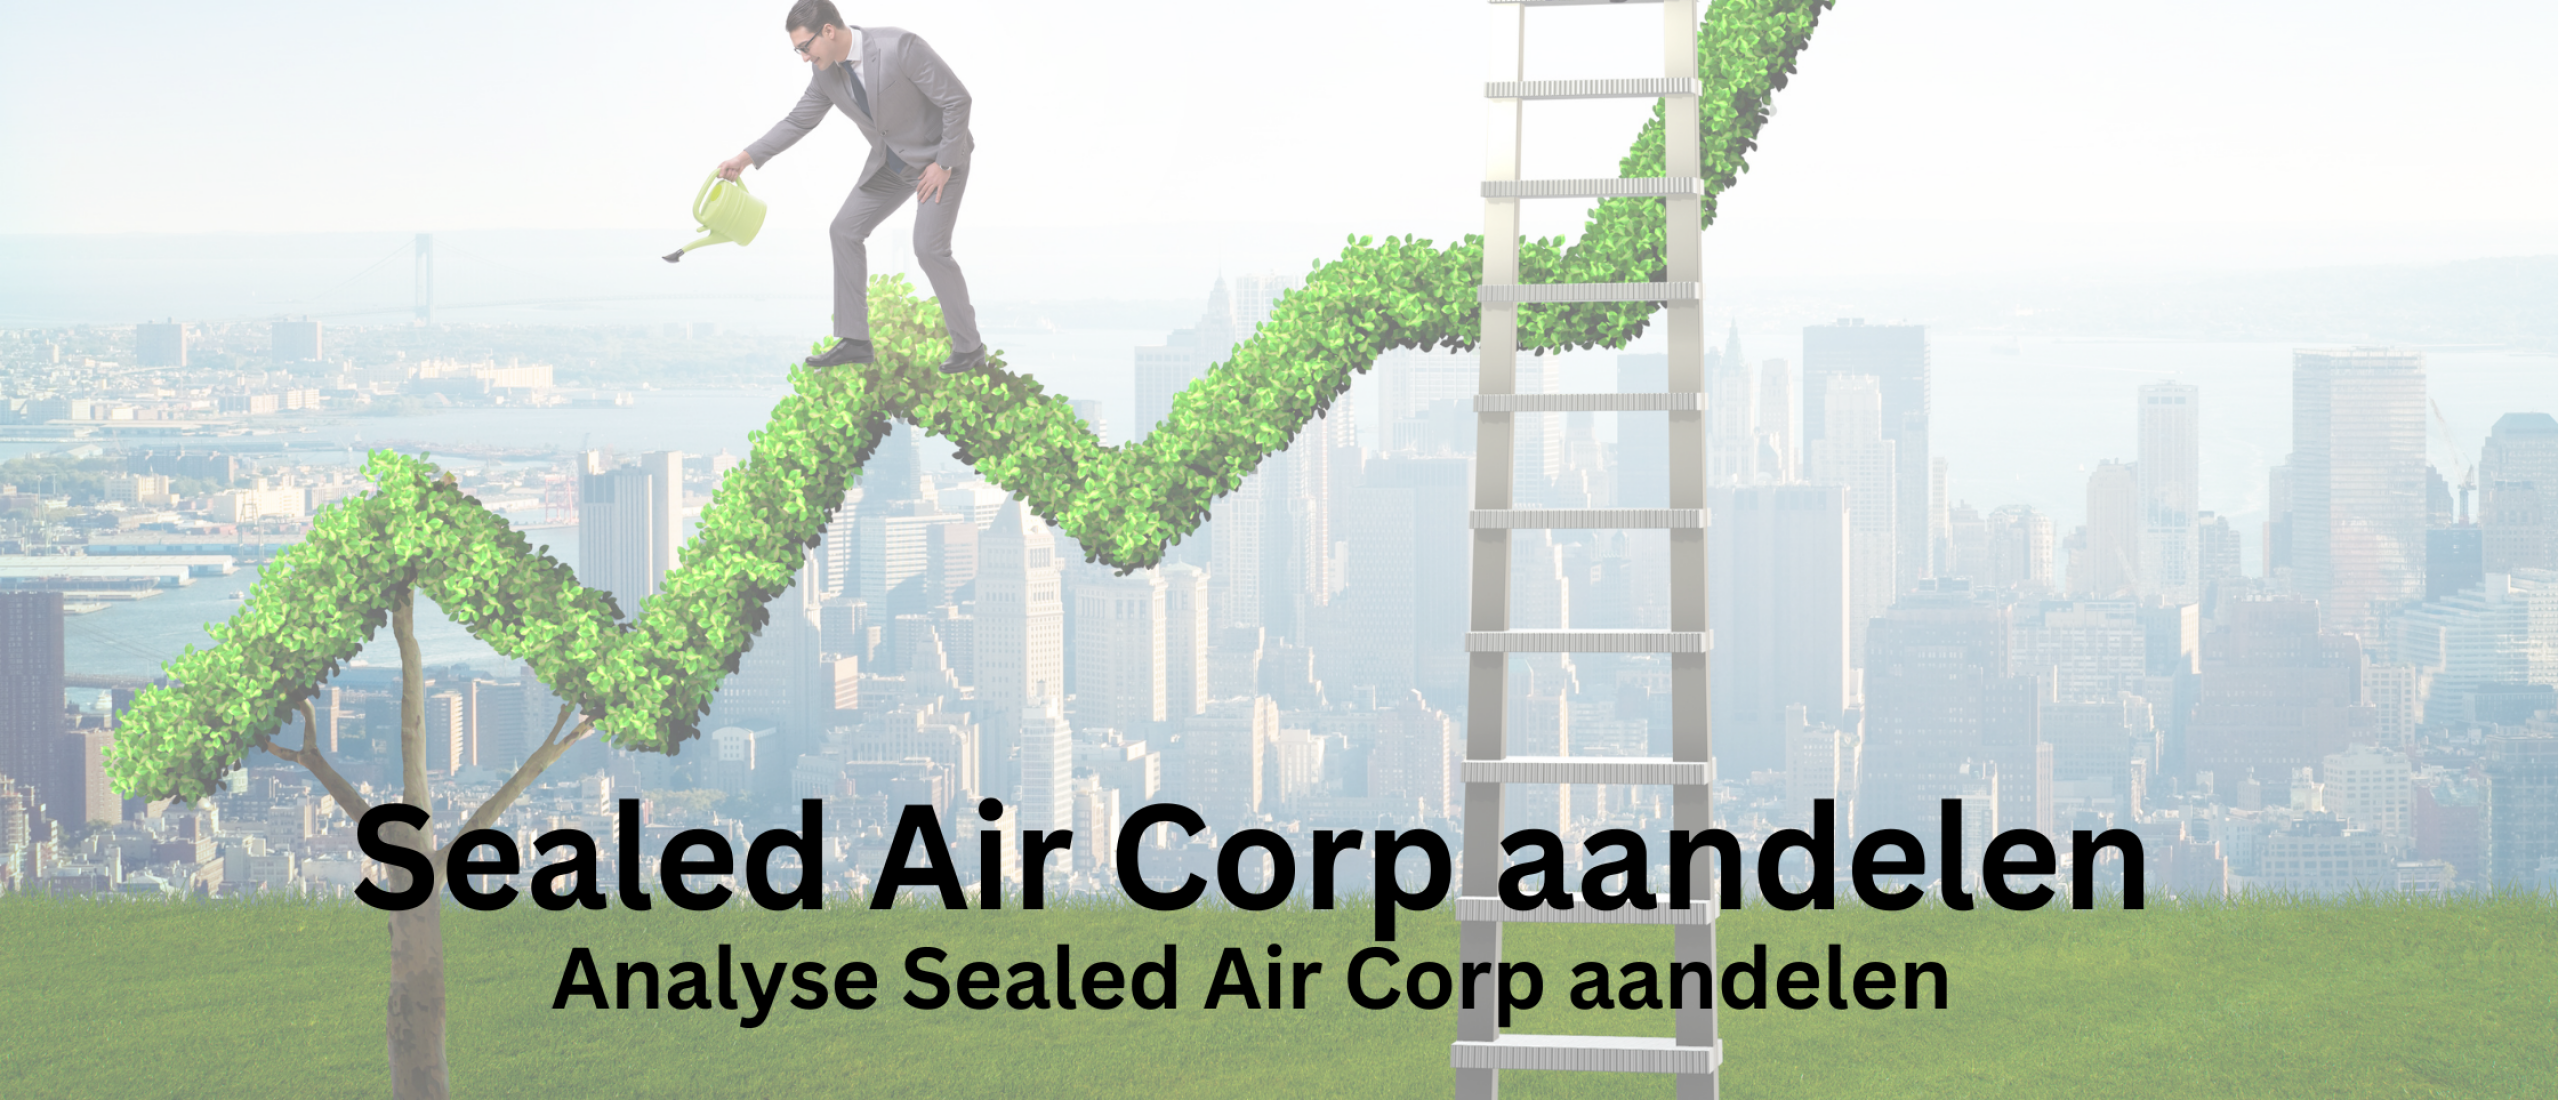 analyse-sealed-air-corp-aandelen